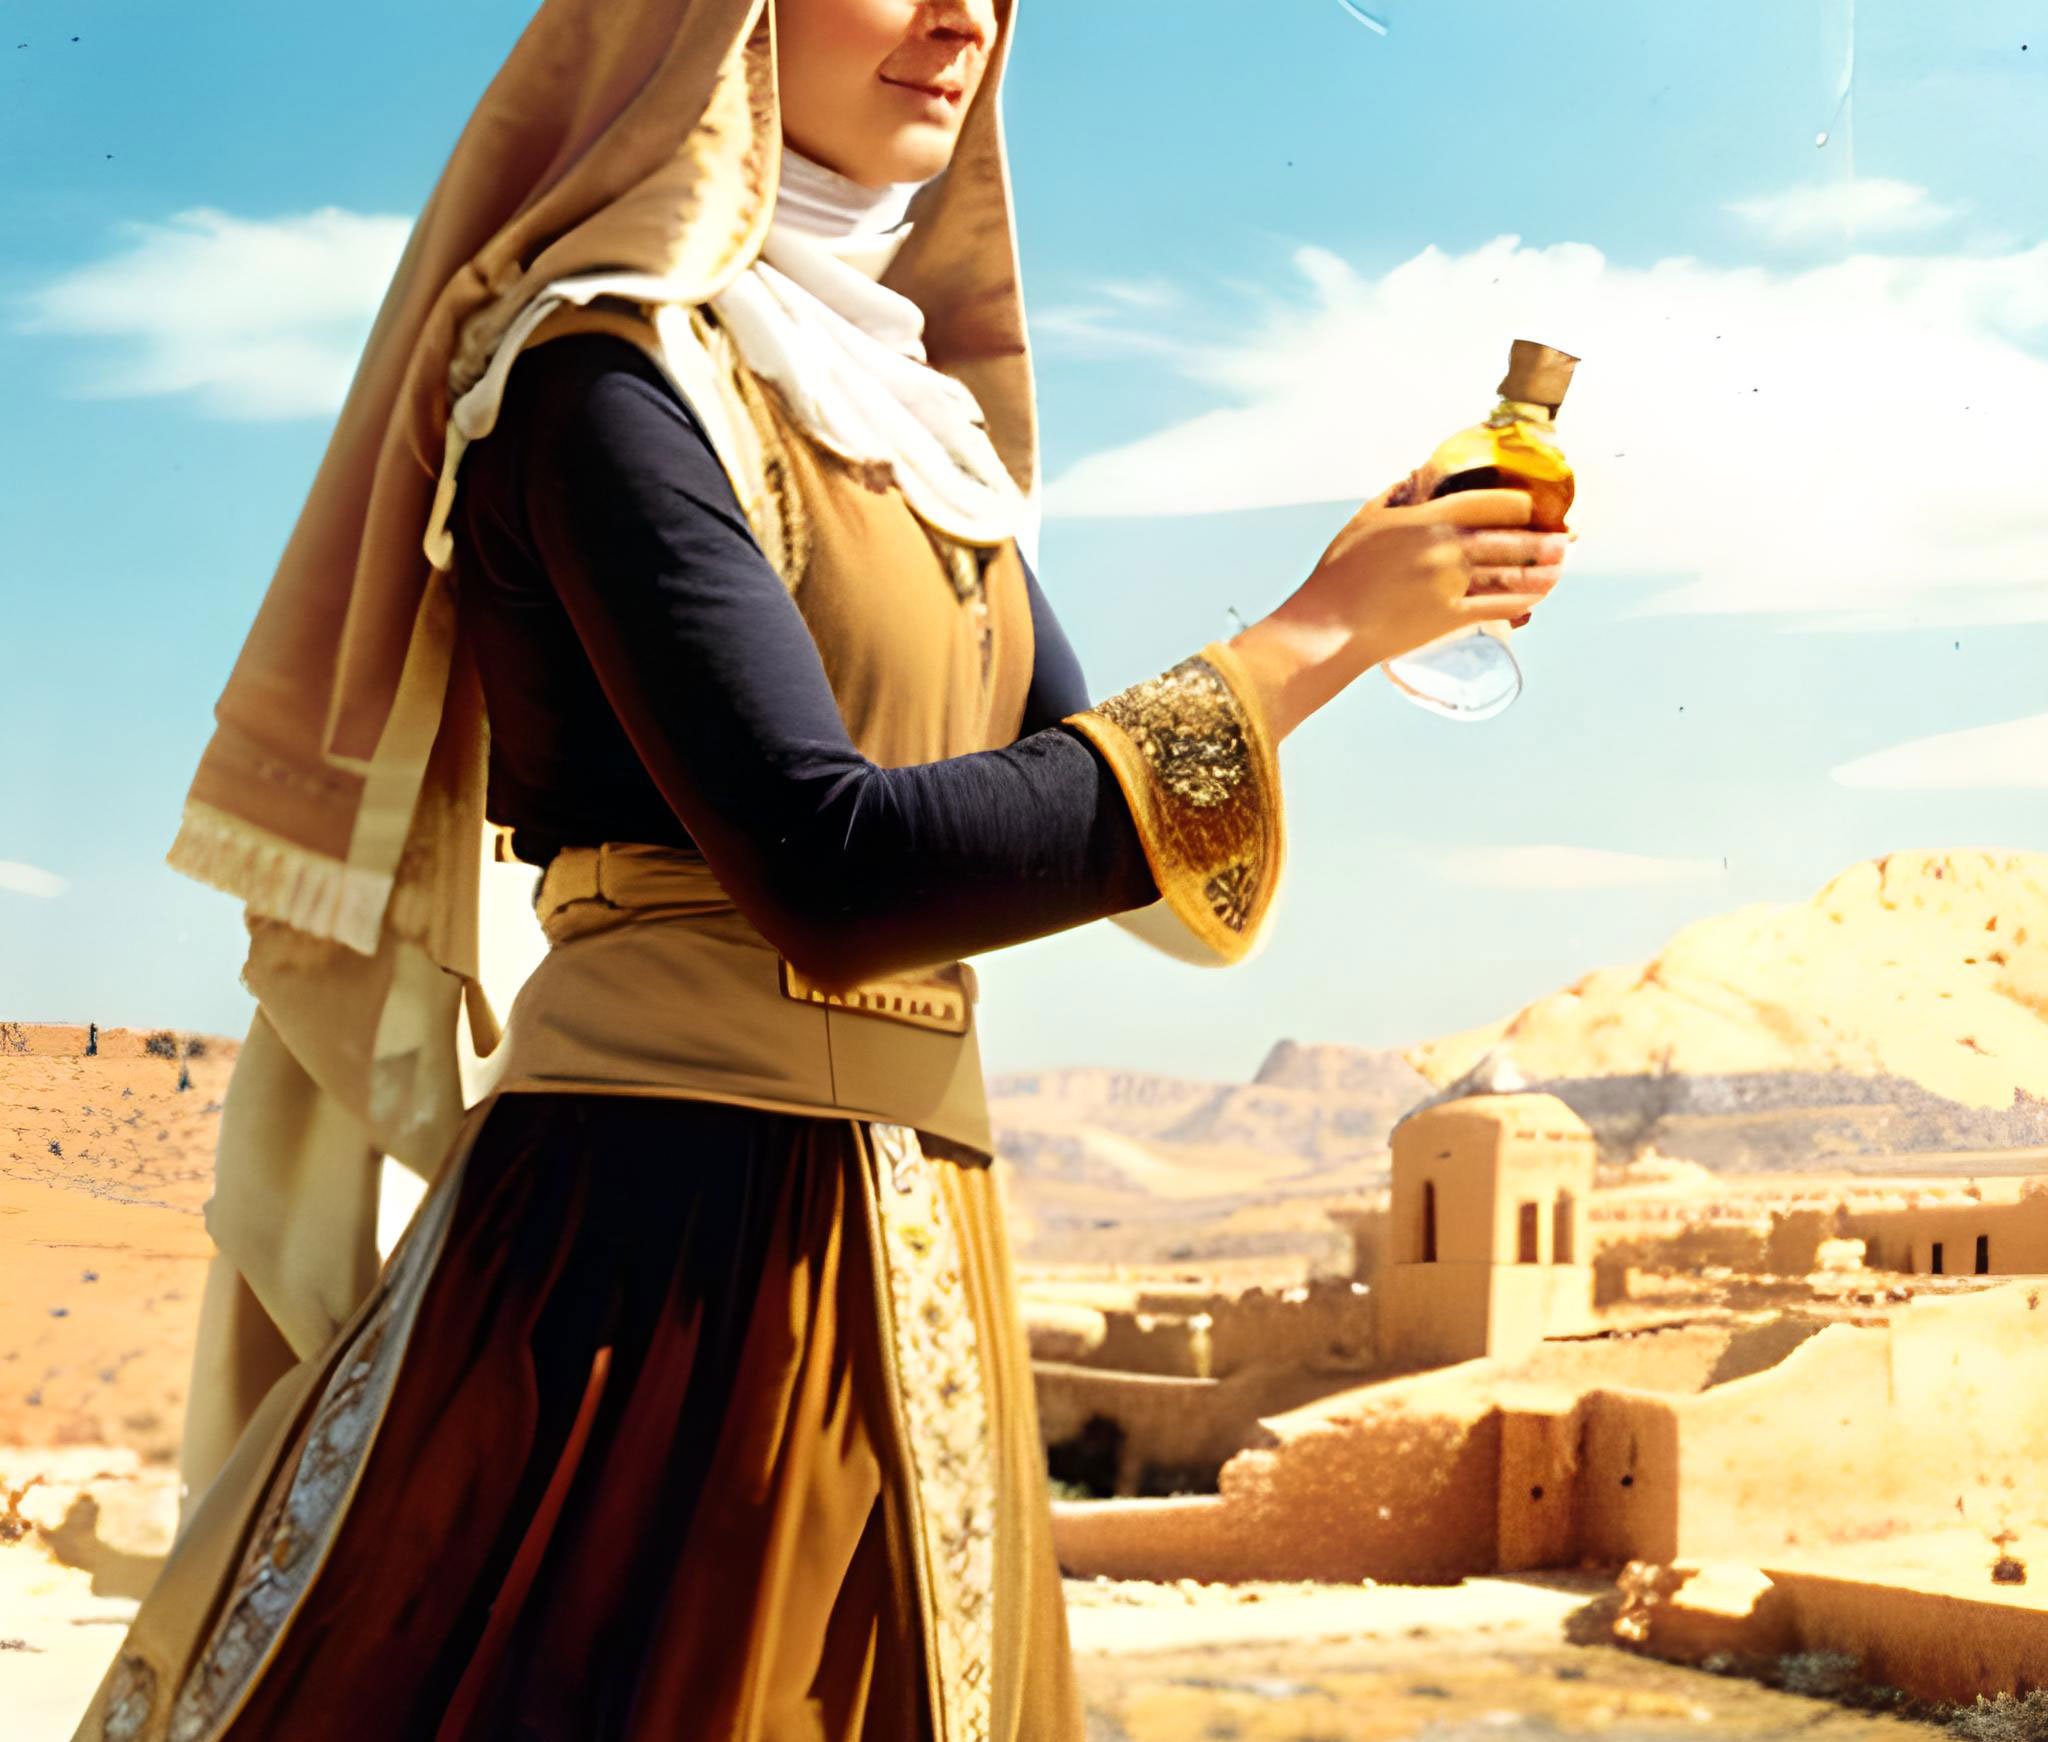 Een vrouw met een fles arganolie in een woestijn met een oude stad op de achtergrond